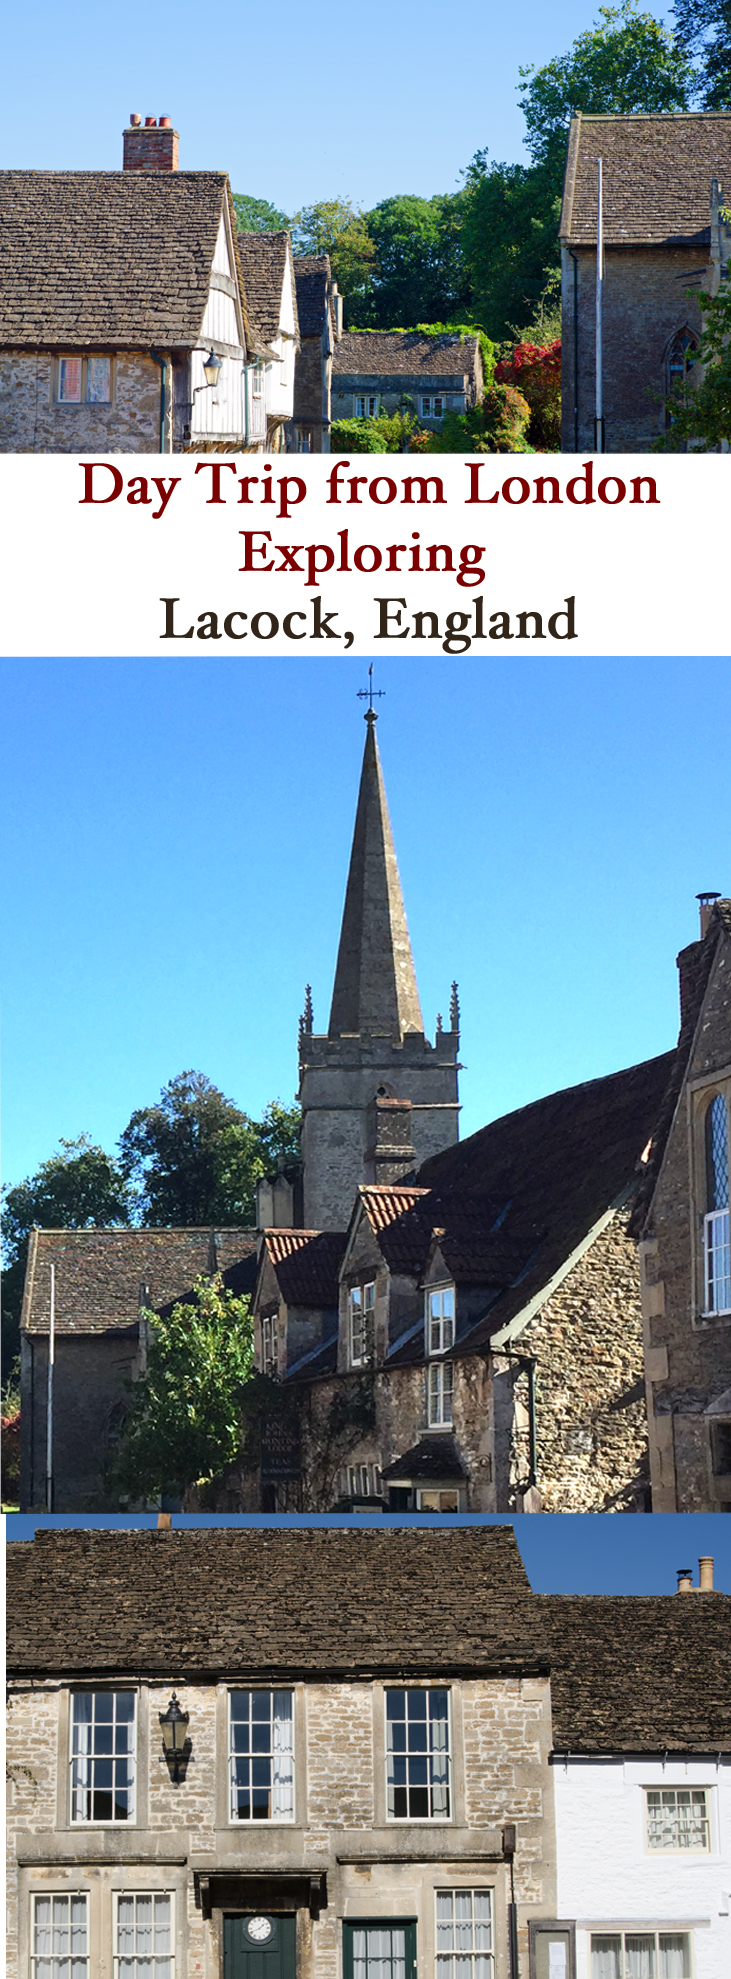 Lacock England